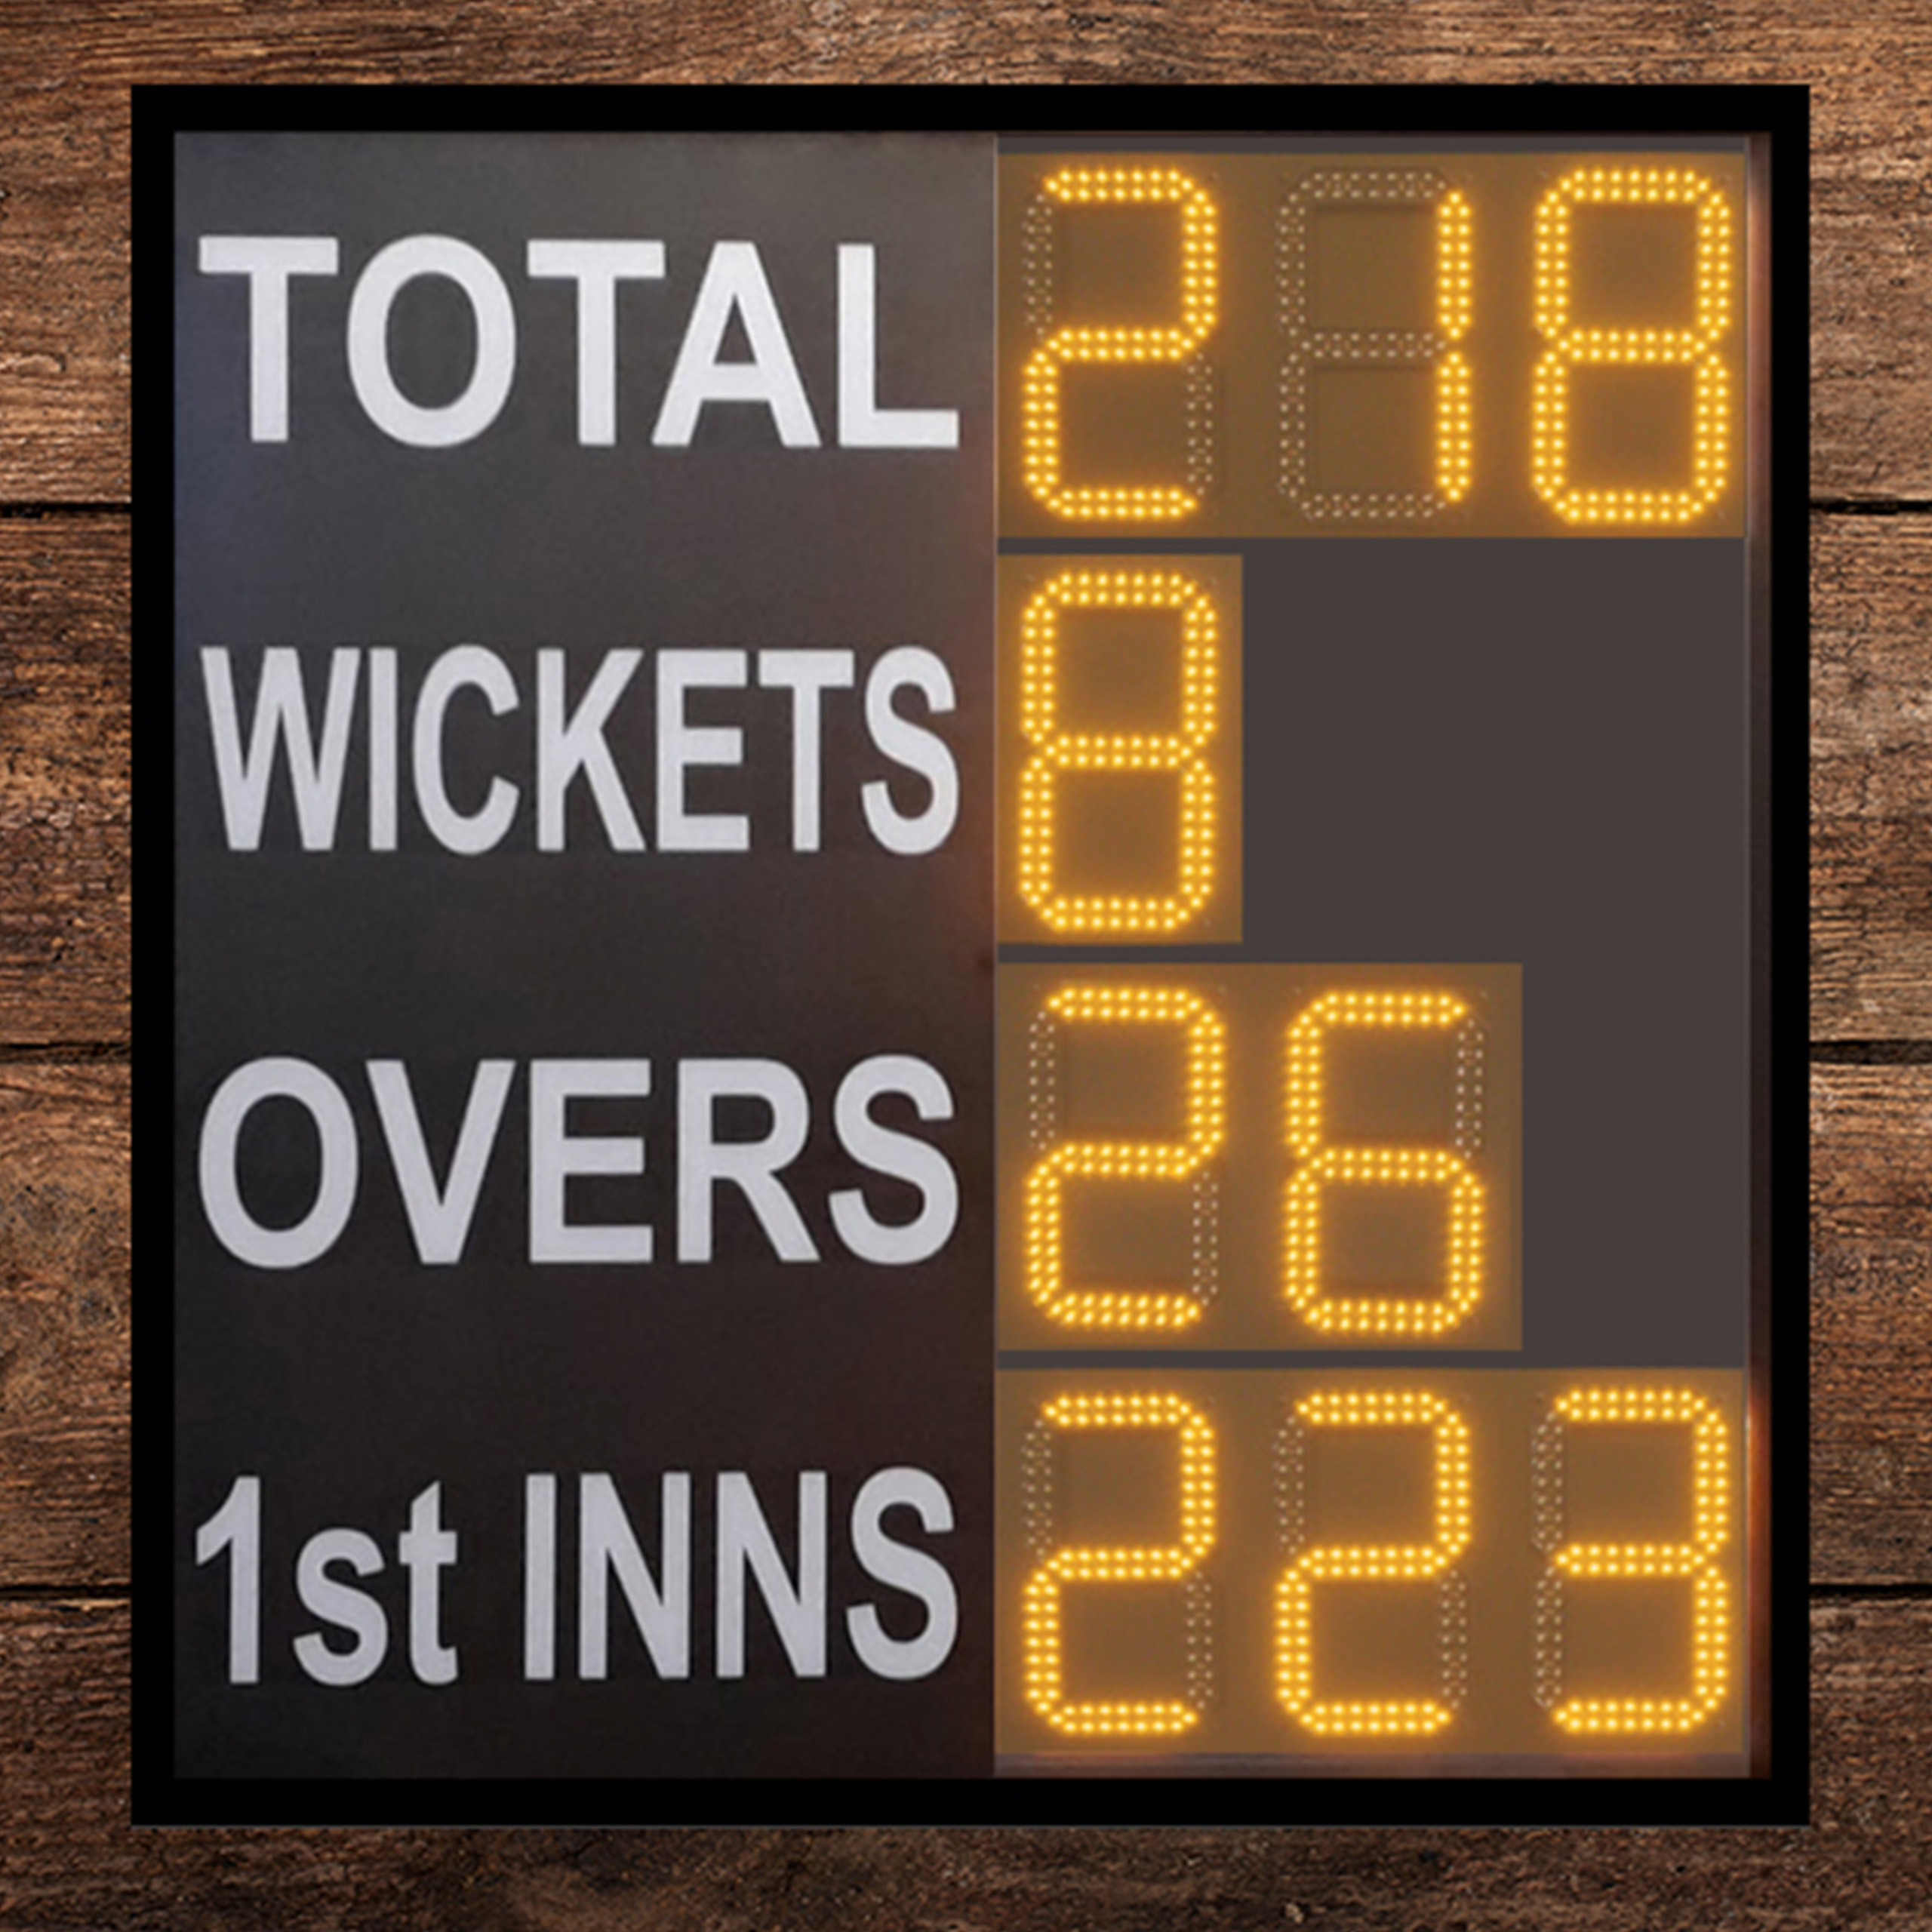 Cricket Scoreboards For Sale